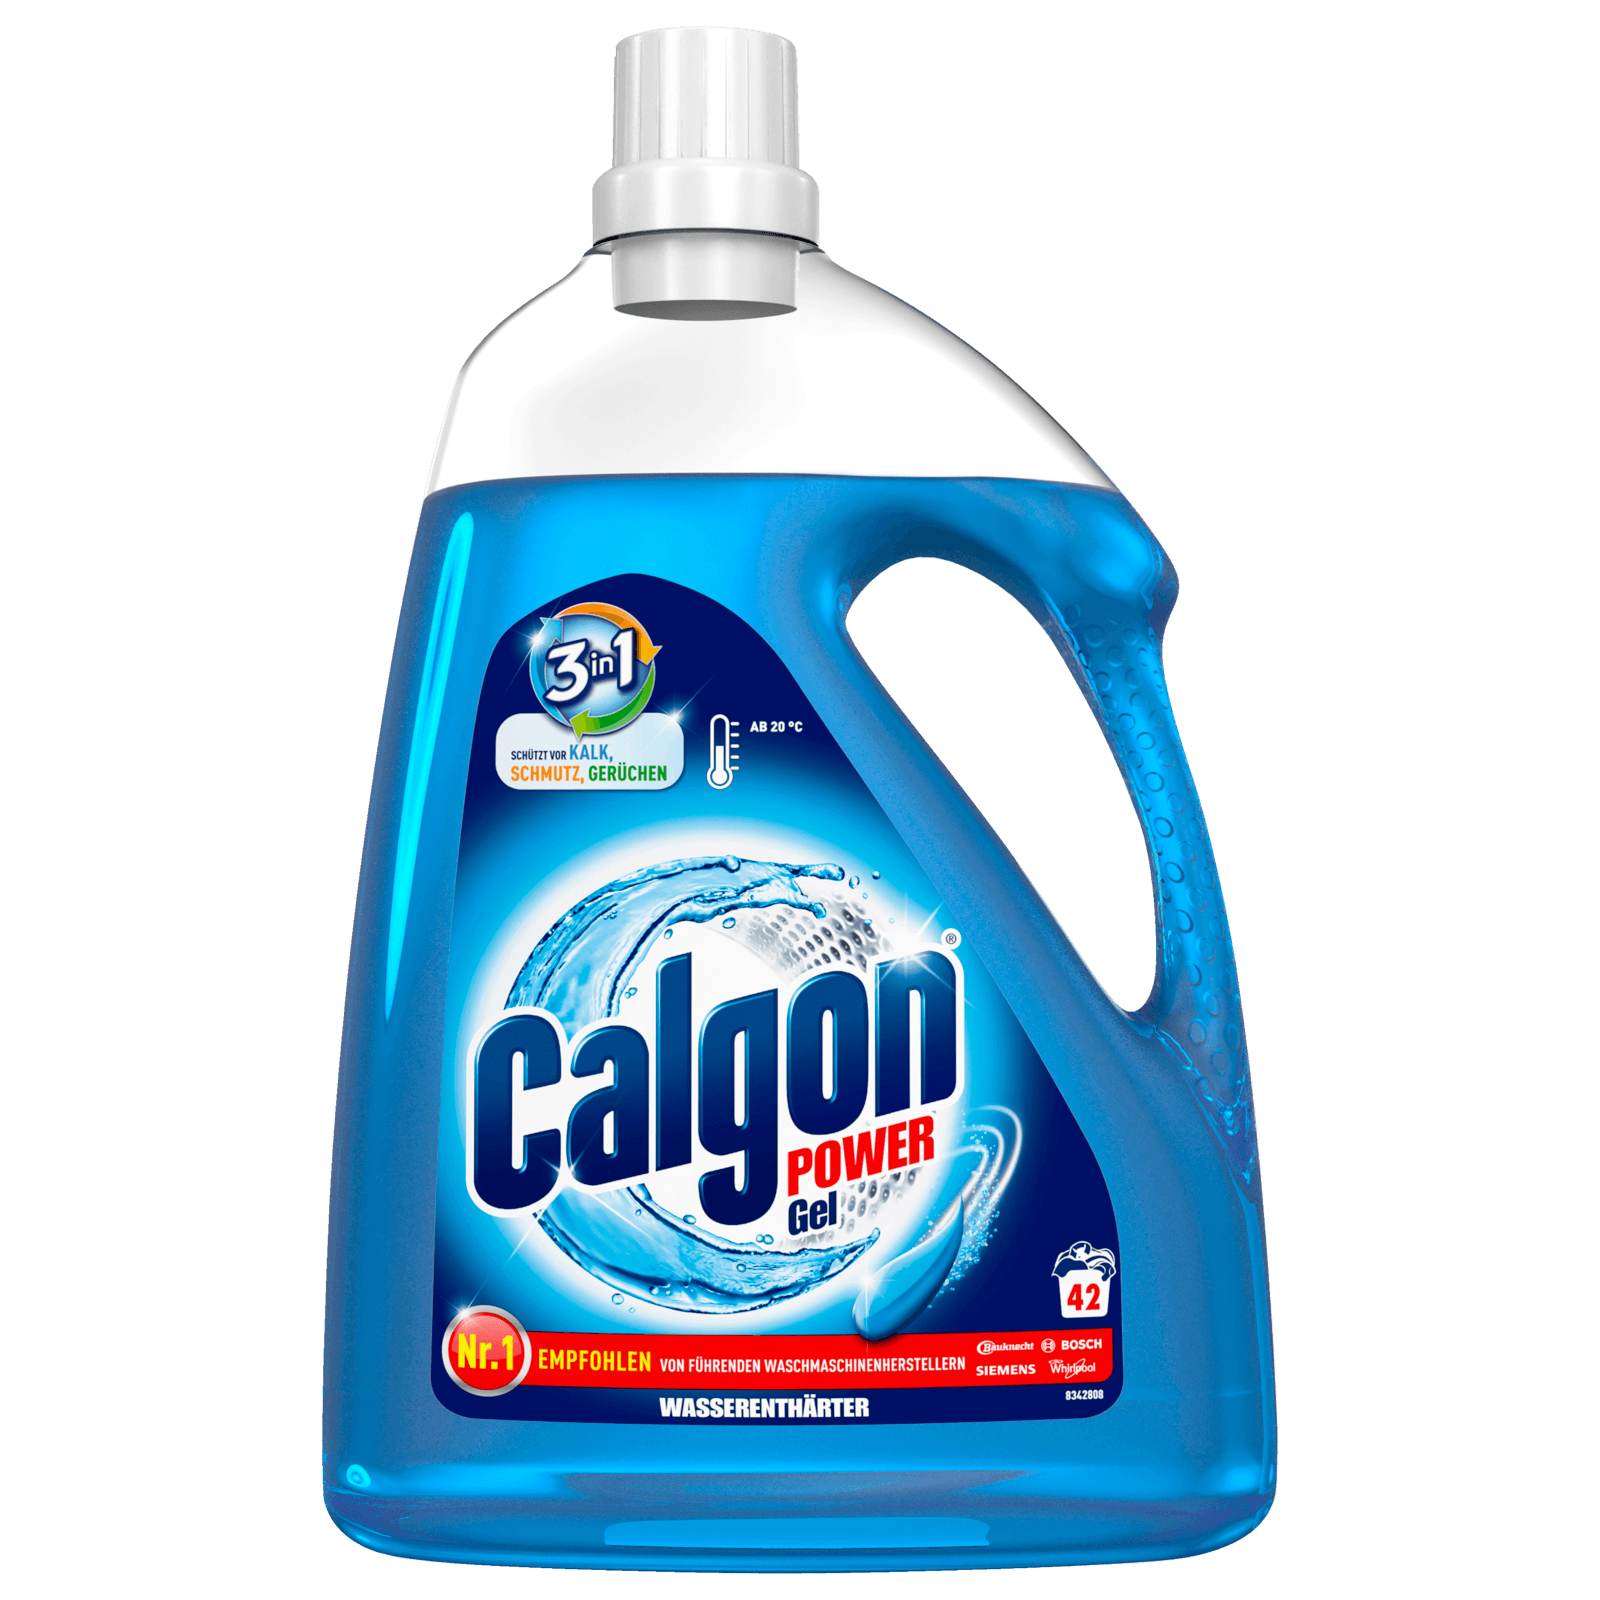 Calgon для стиральной машины. Calgon гель ср-во для смягчения воды 750мл(Бенкизер):6. Calgon 2in1 средство для умягчения воды 550гр. Калгон гель 2в1. Калгон 2 в 1.